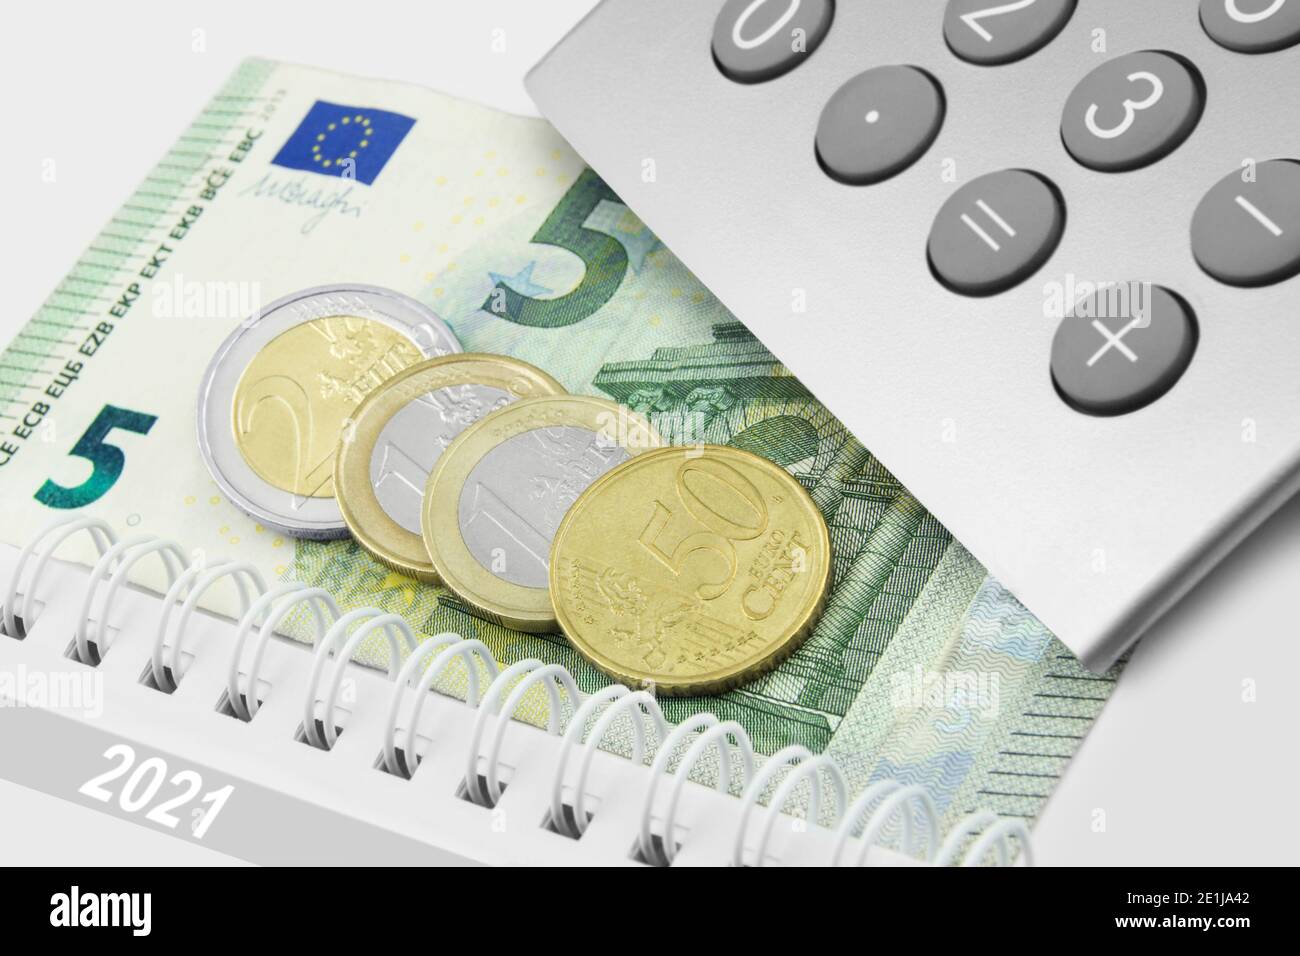 Deutschland 2021 Mundestlohn 9,50 Euro und Rechner Foto Stock